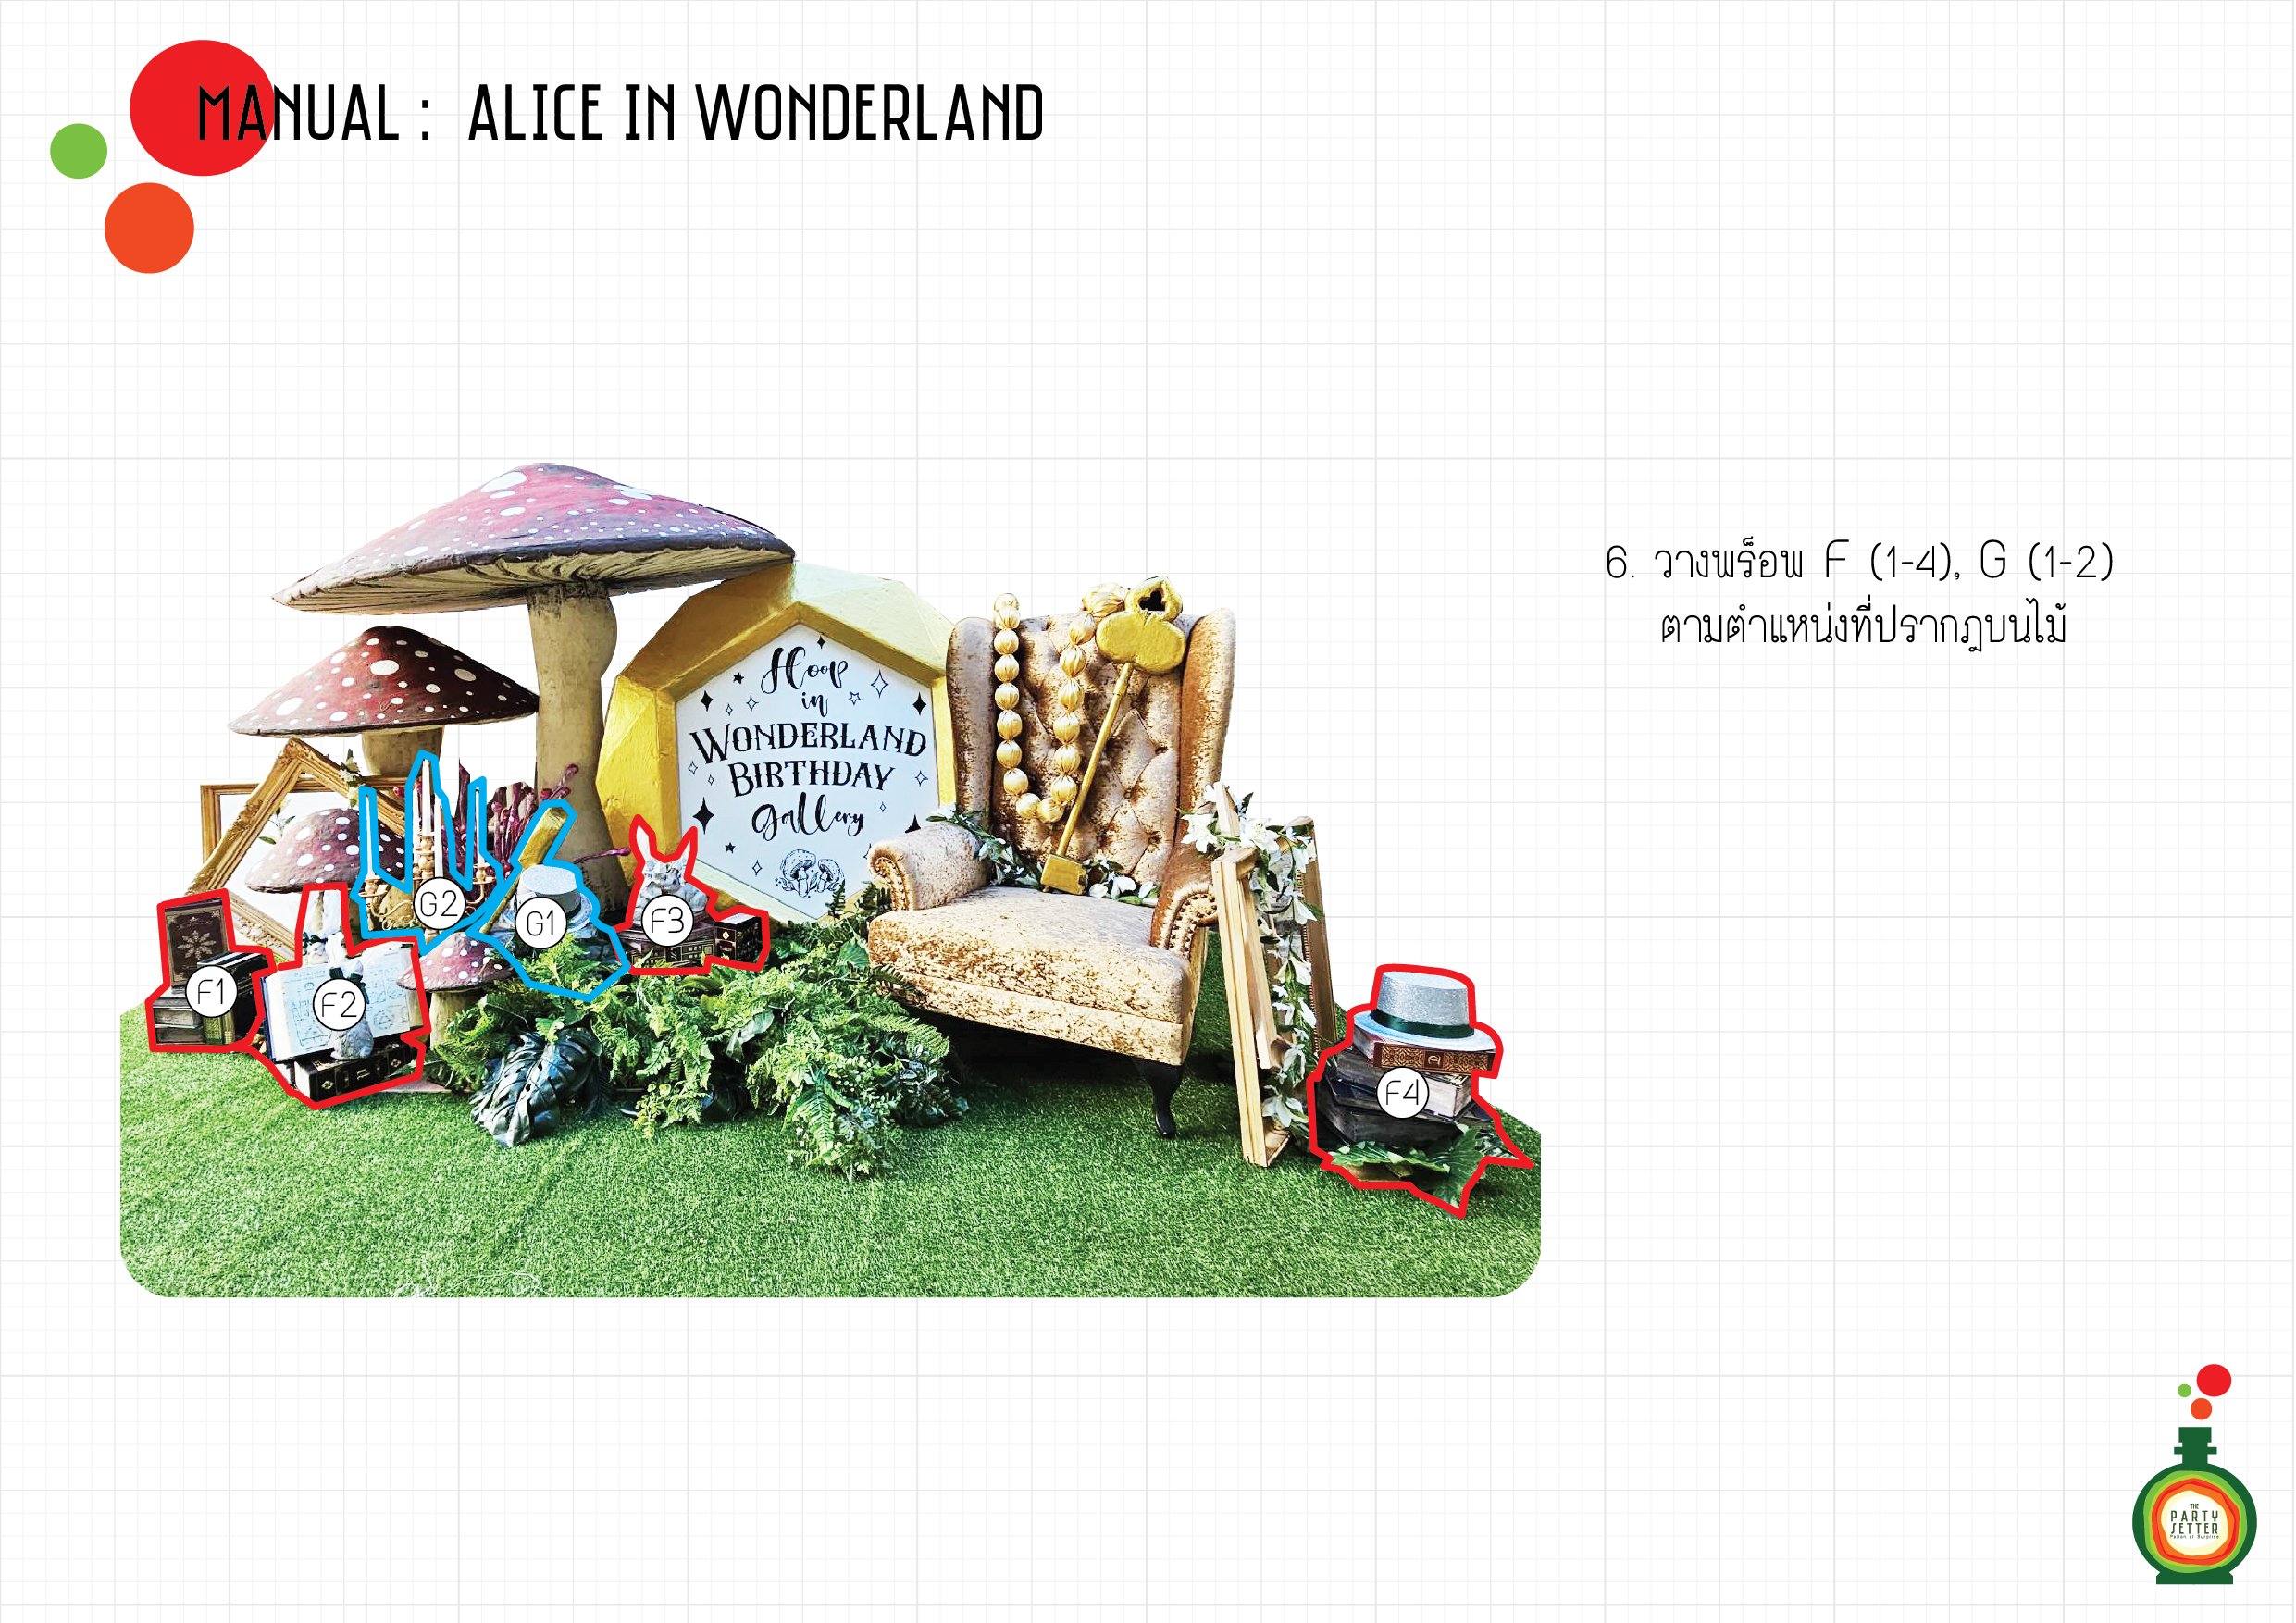 Manual_Alice in Wonderland_06-01.jpg